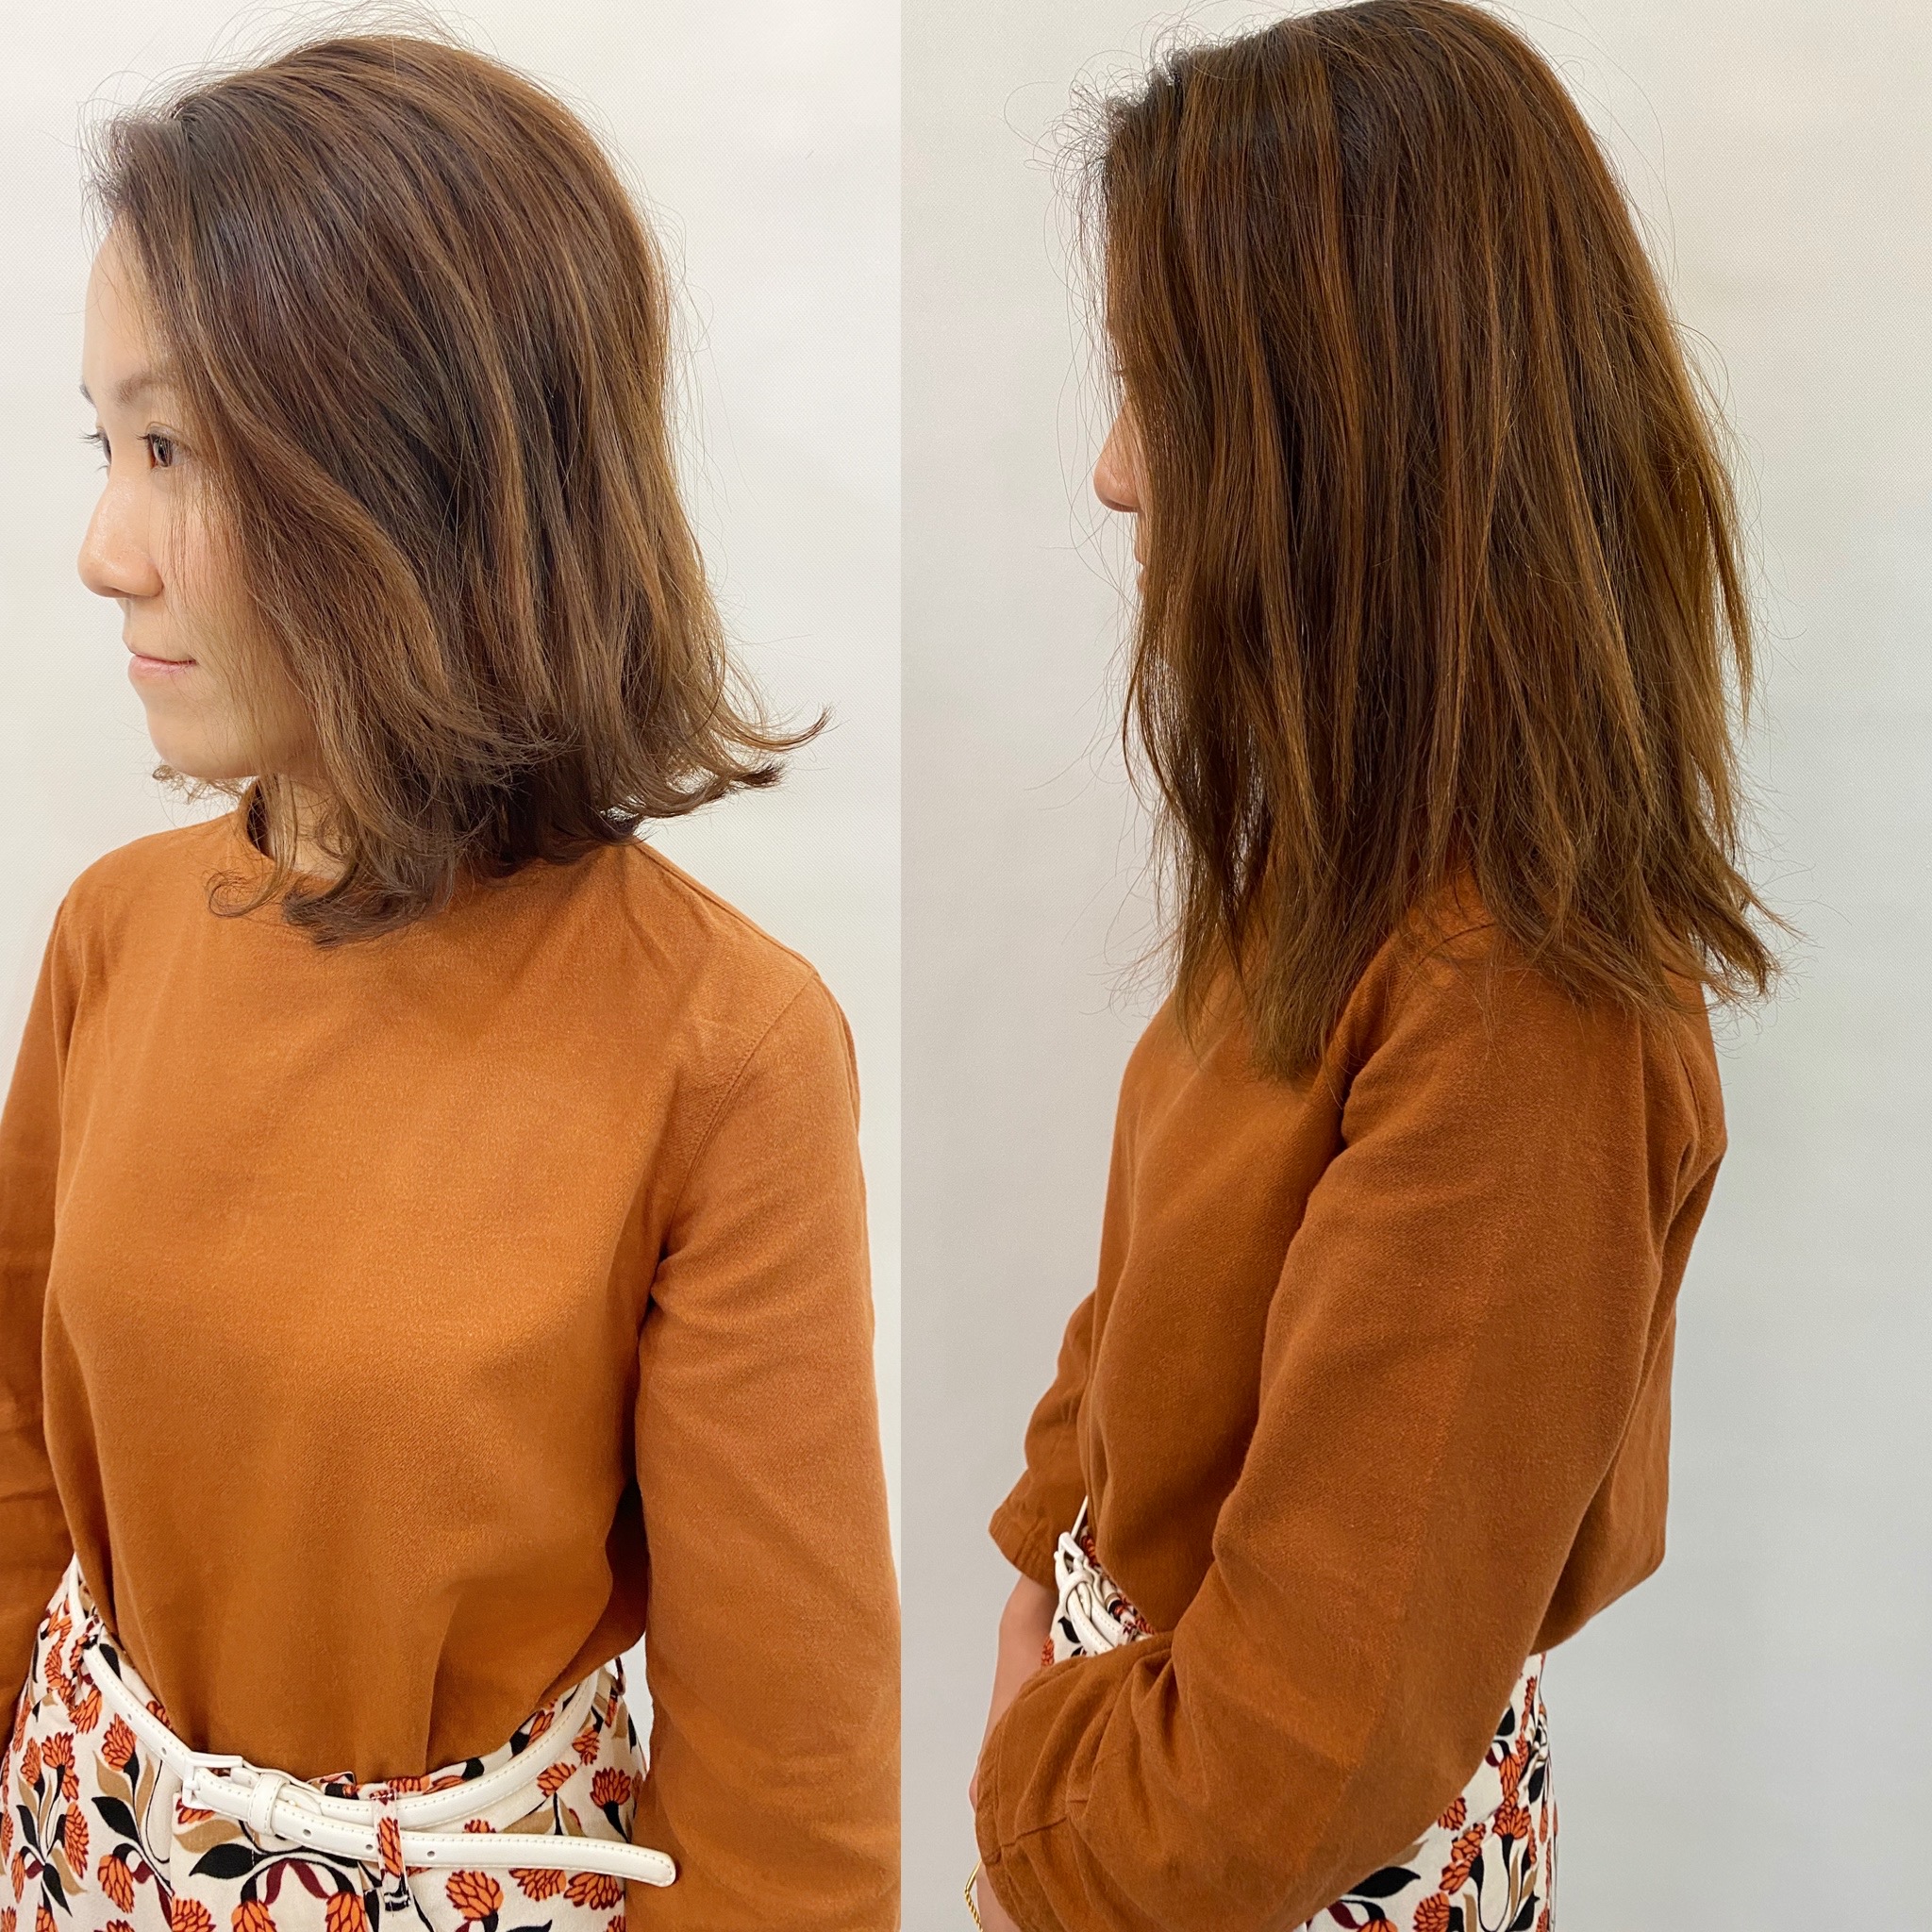 髮型作品參考:日系輕盈感曲髮+奶茶色係